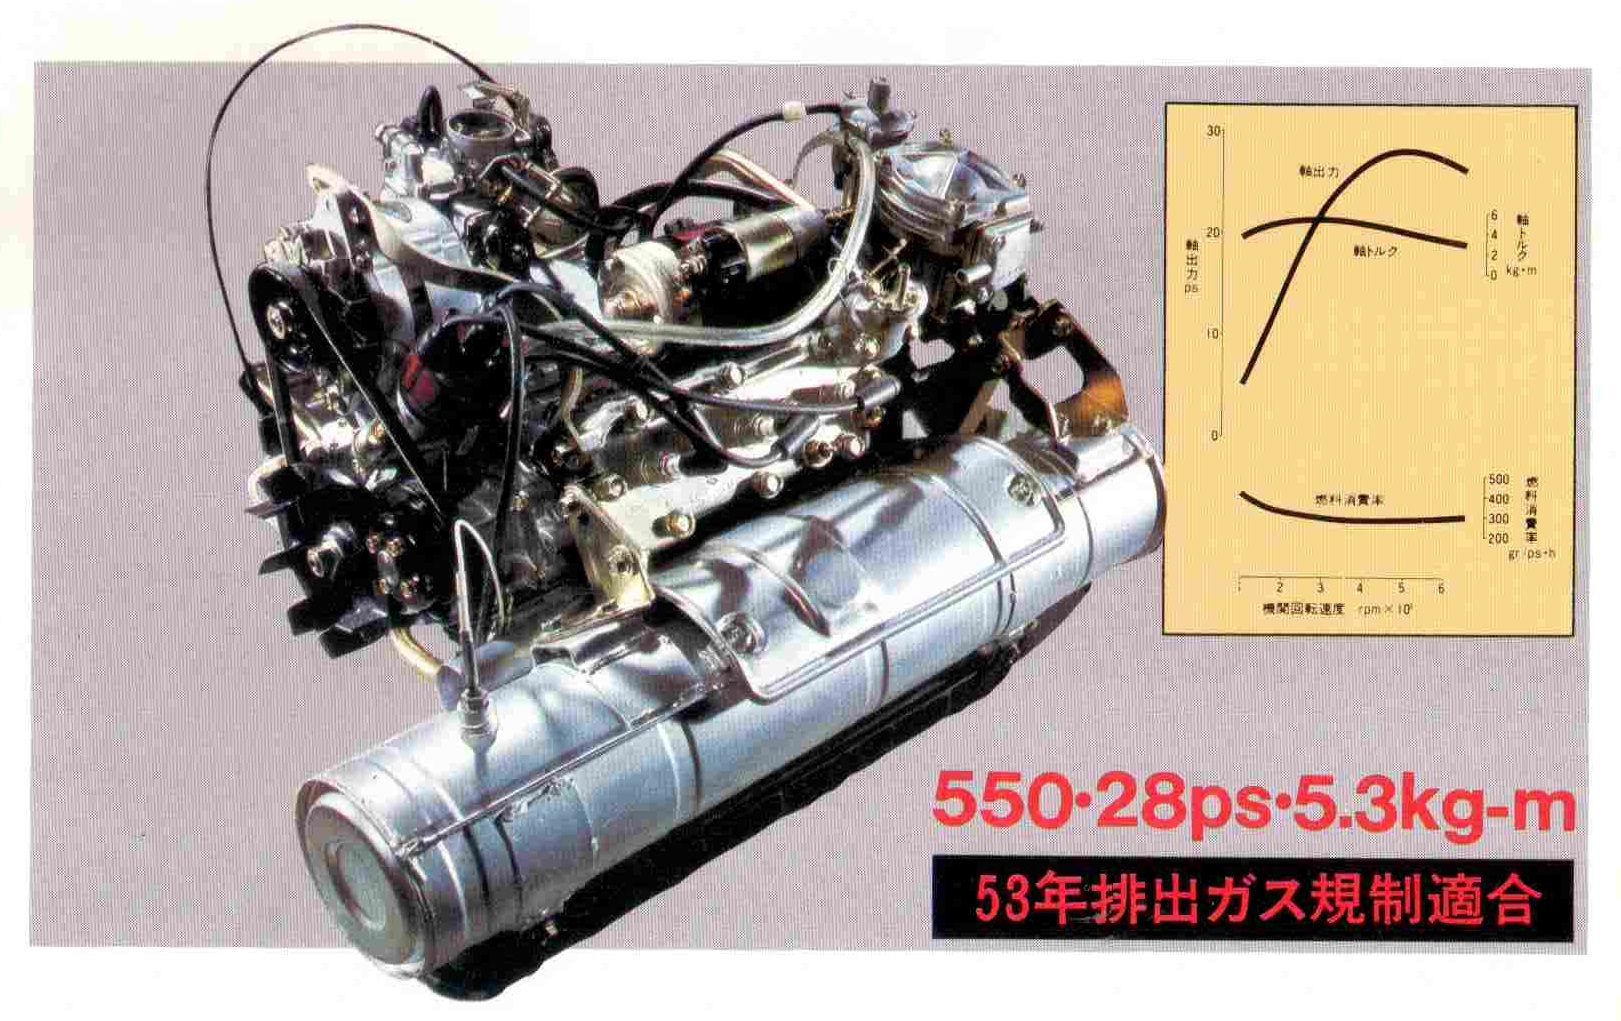 De watergekoelde 3 cilinder tweetakt van de Suzuki Cervo 